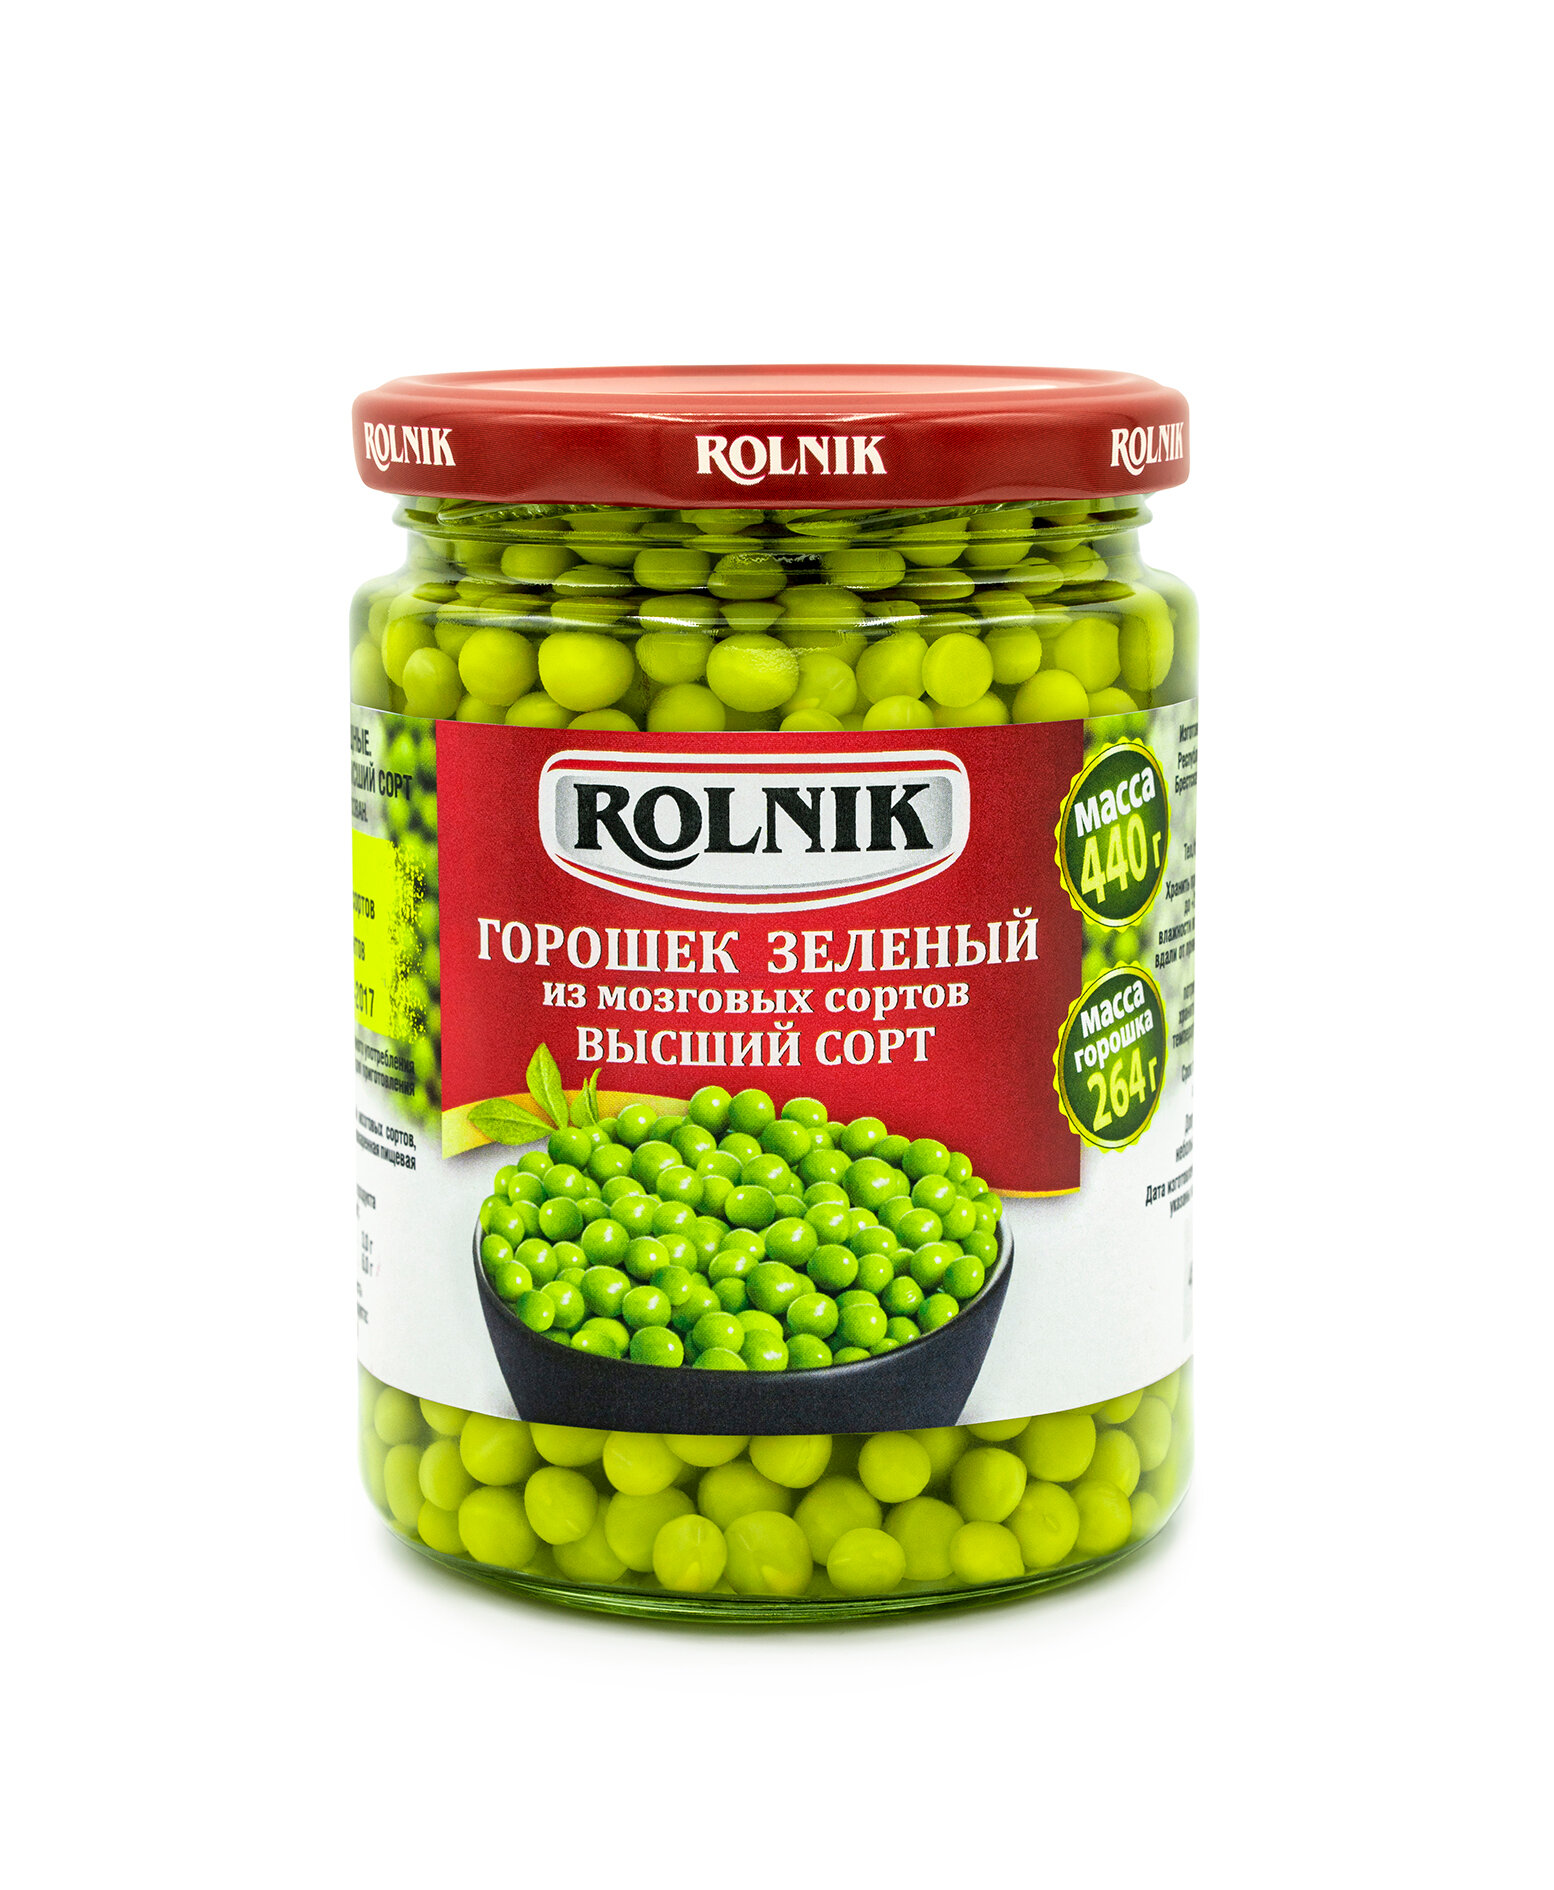 ROLNIK Горошек зелёный из мозговых сортов Высший сорт, консервы овощные, 4 банки по 440гр